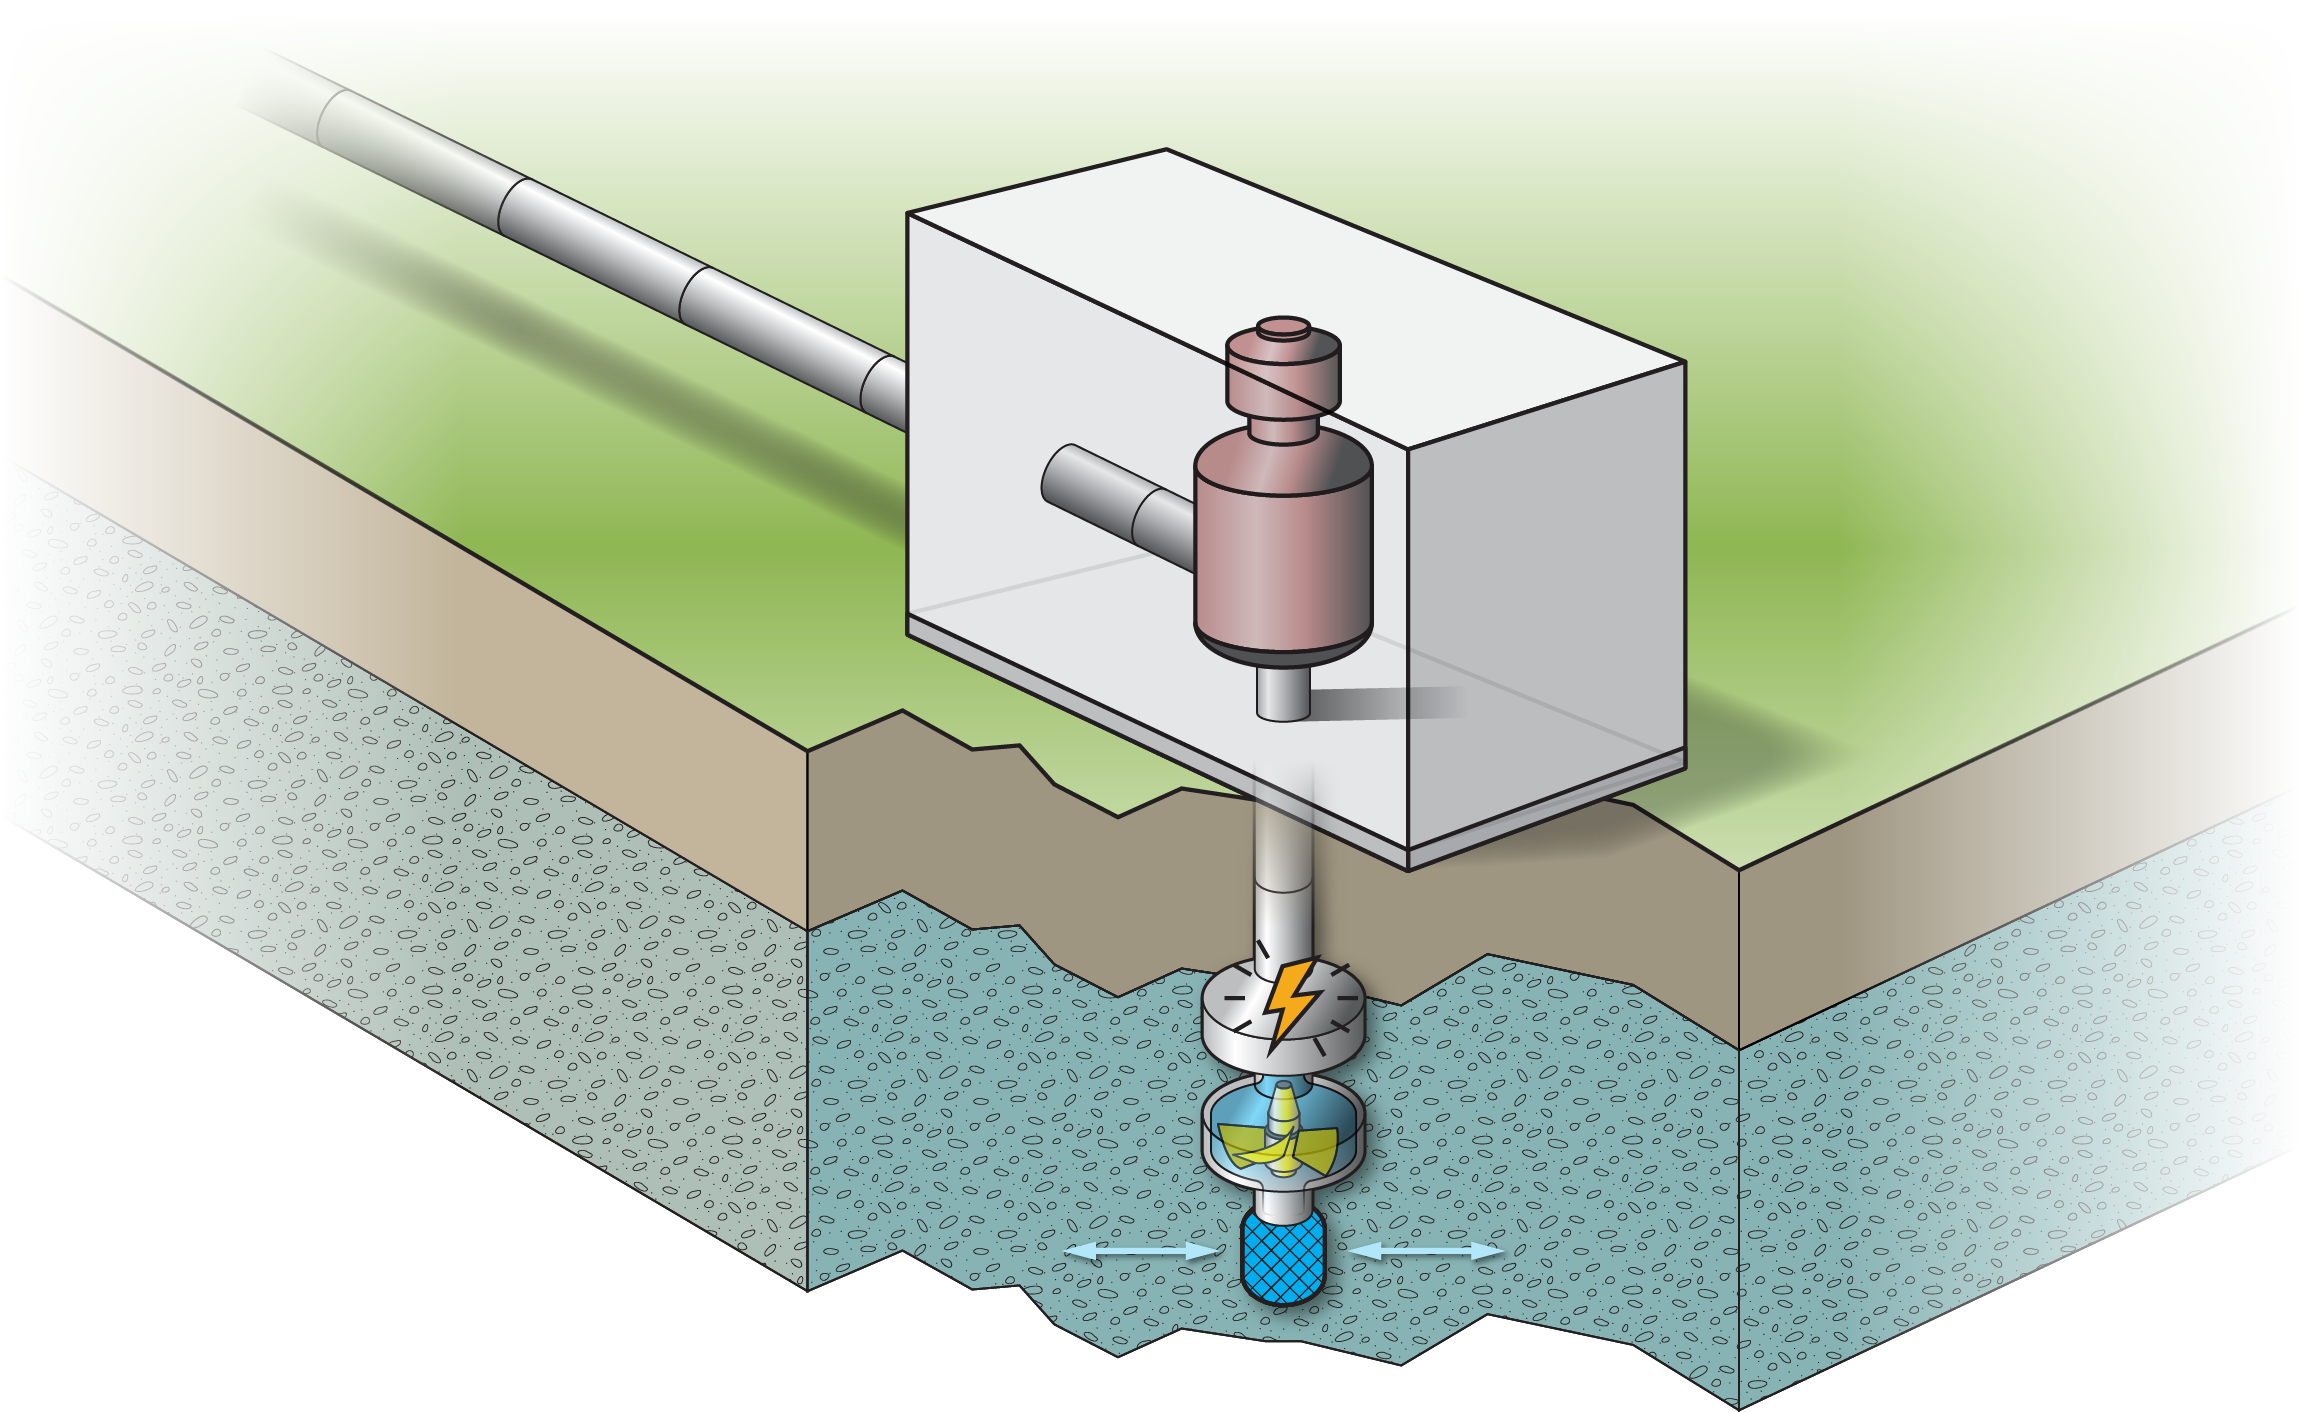 Recharging groundwater